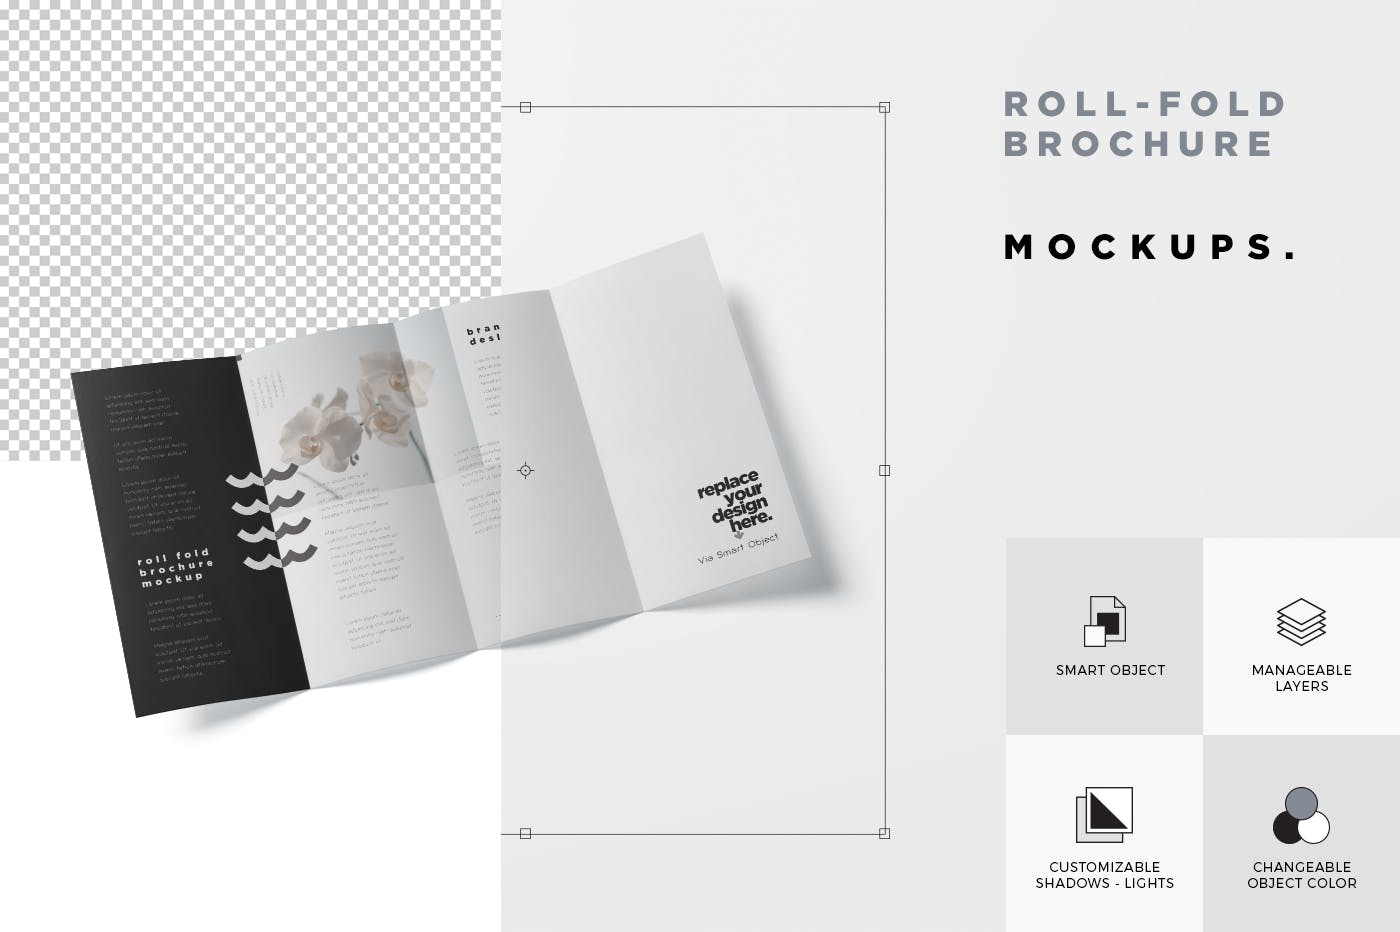 折叠设计风格企业传单/宣传册设计样机蚂蚁素材精选 Roll-Fold Brochure Mockup – DL DIN Lang Size插图(6)